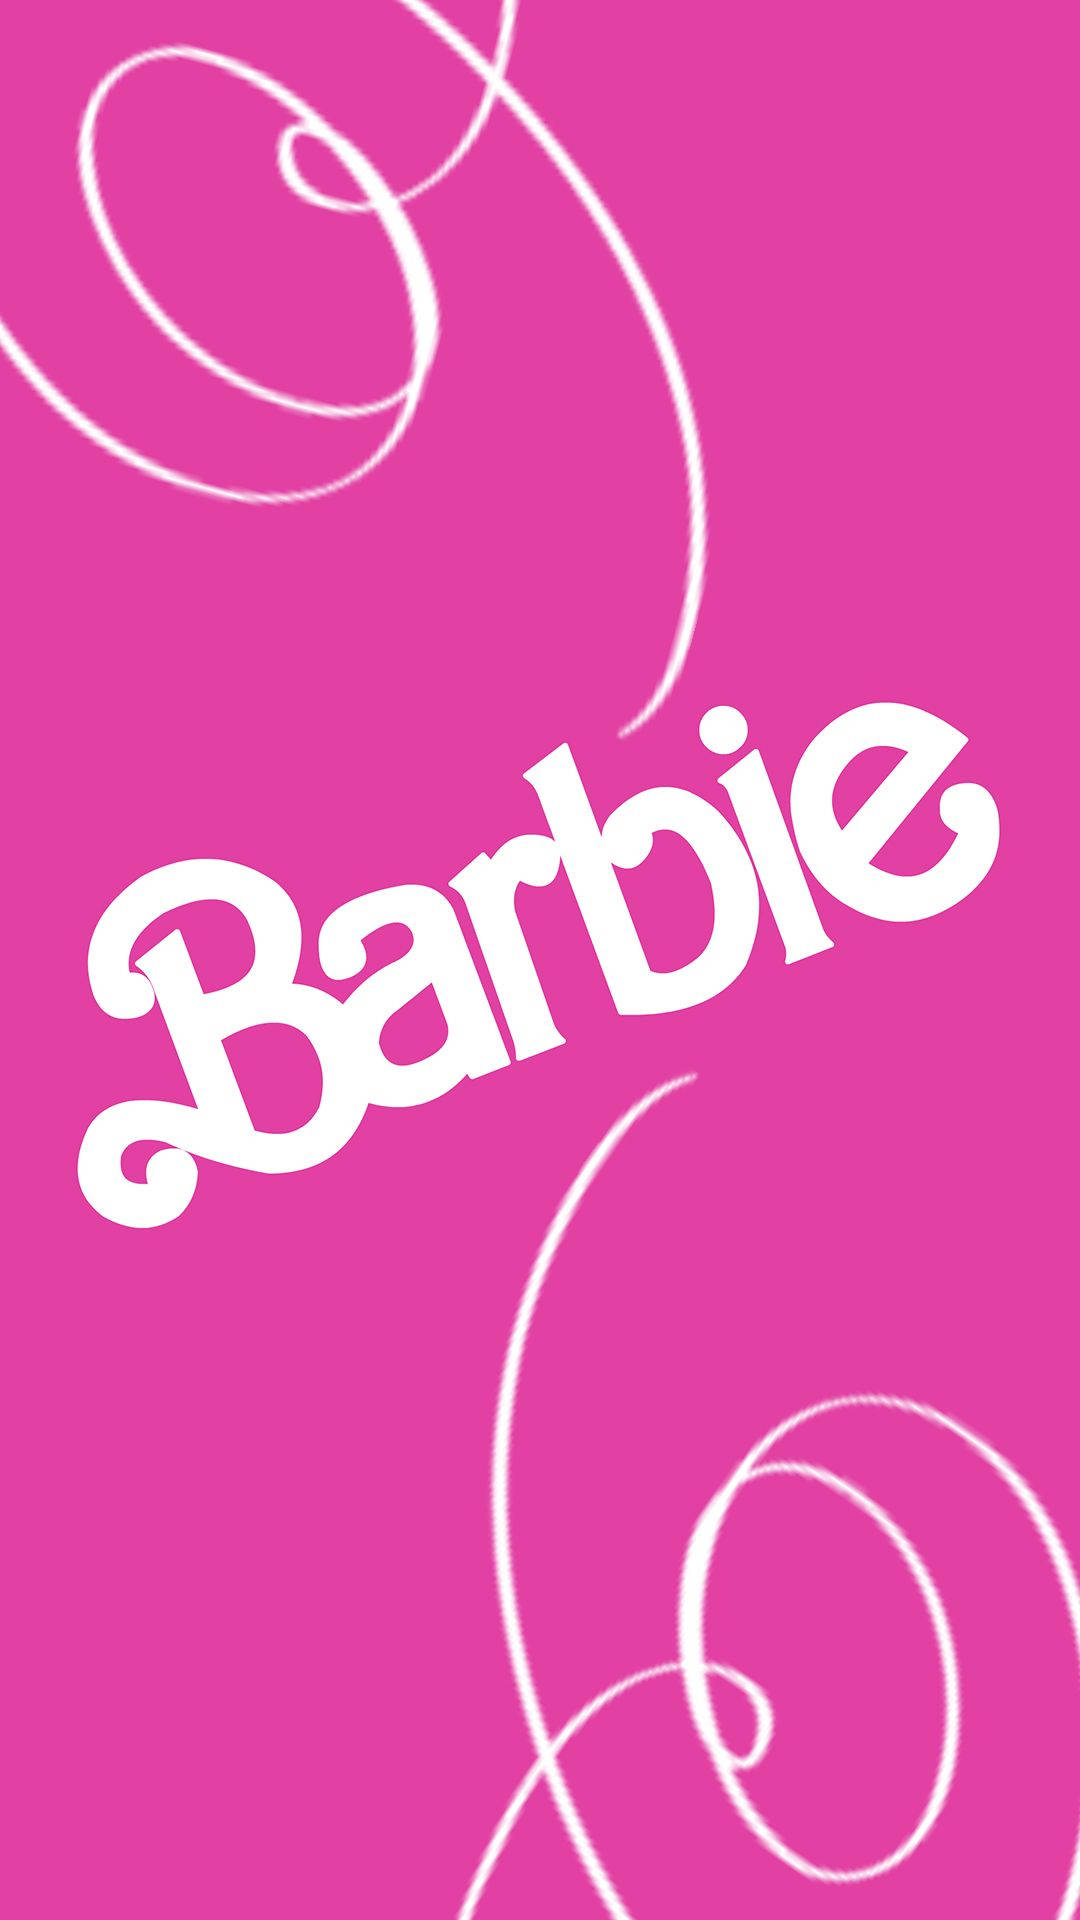 Barbie-logo In Rosa